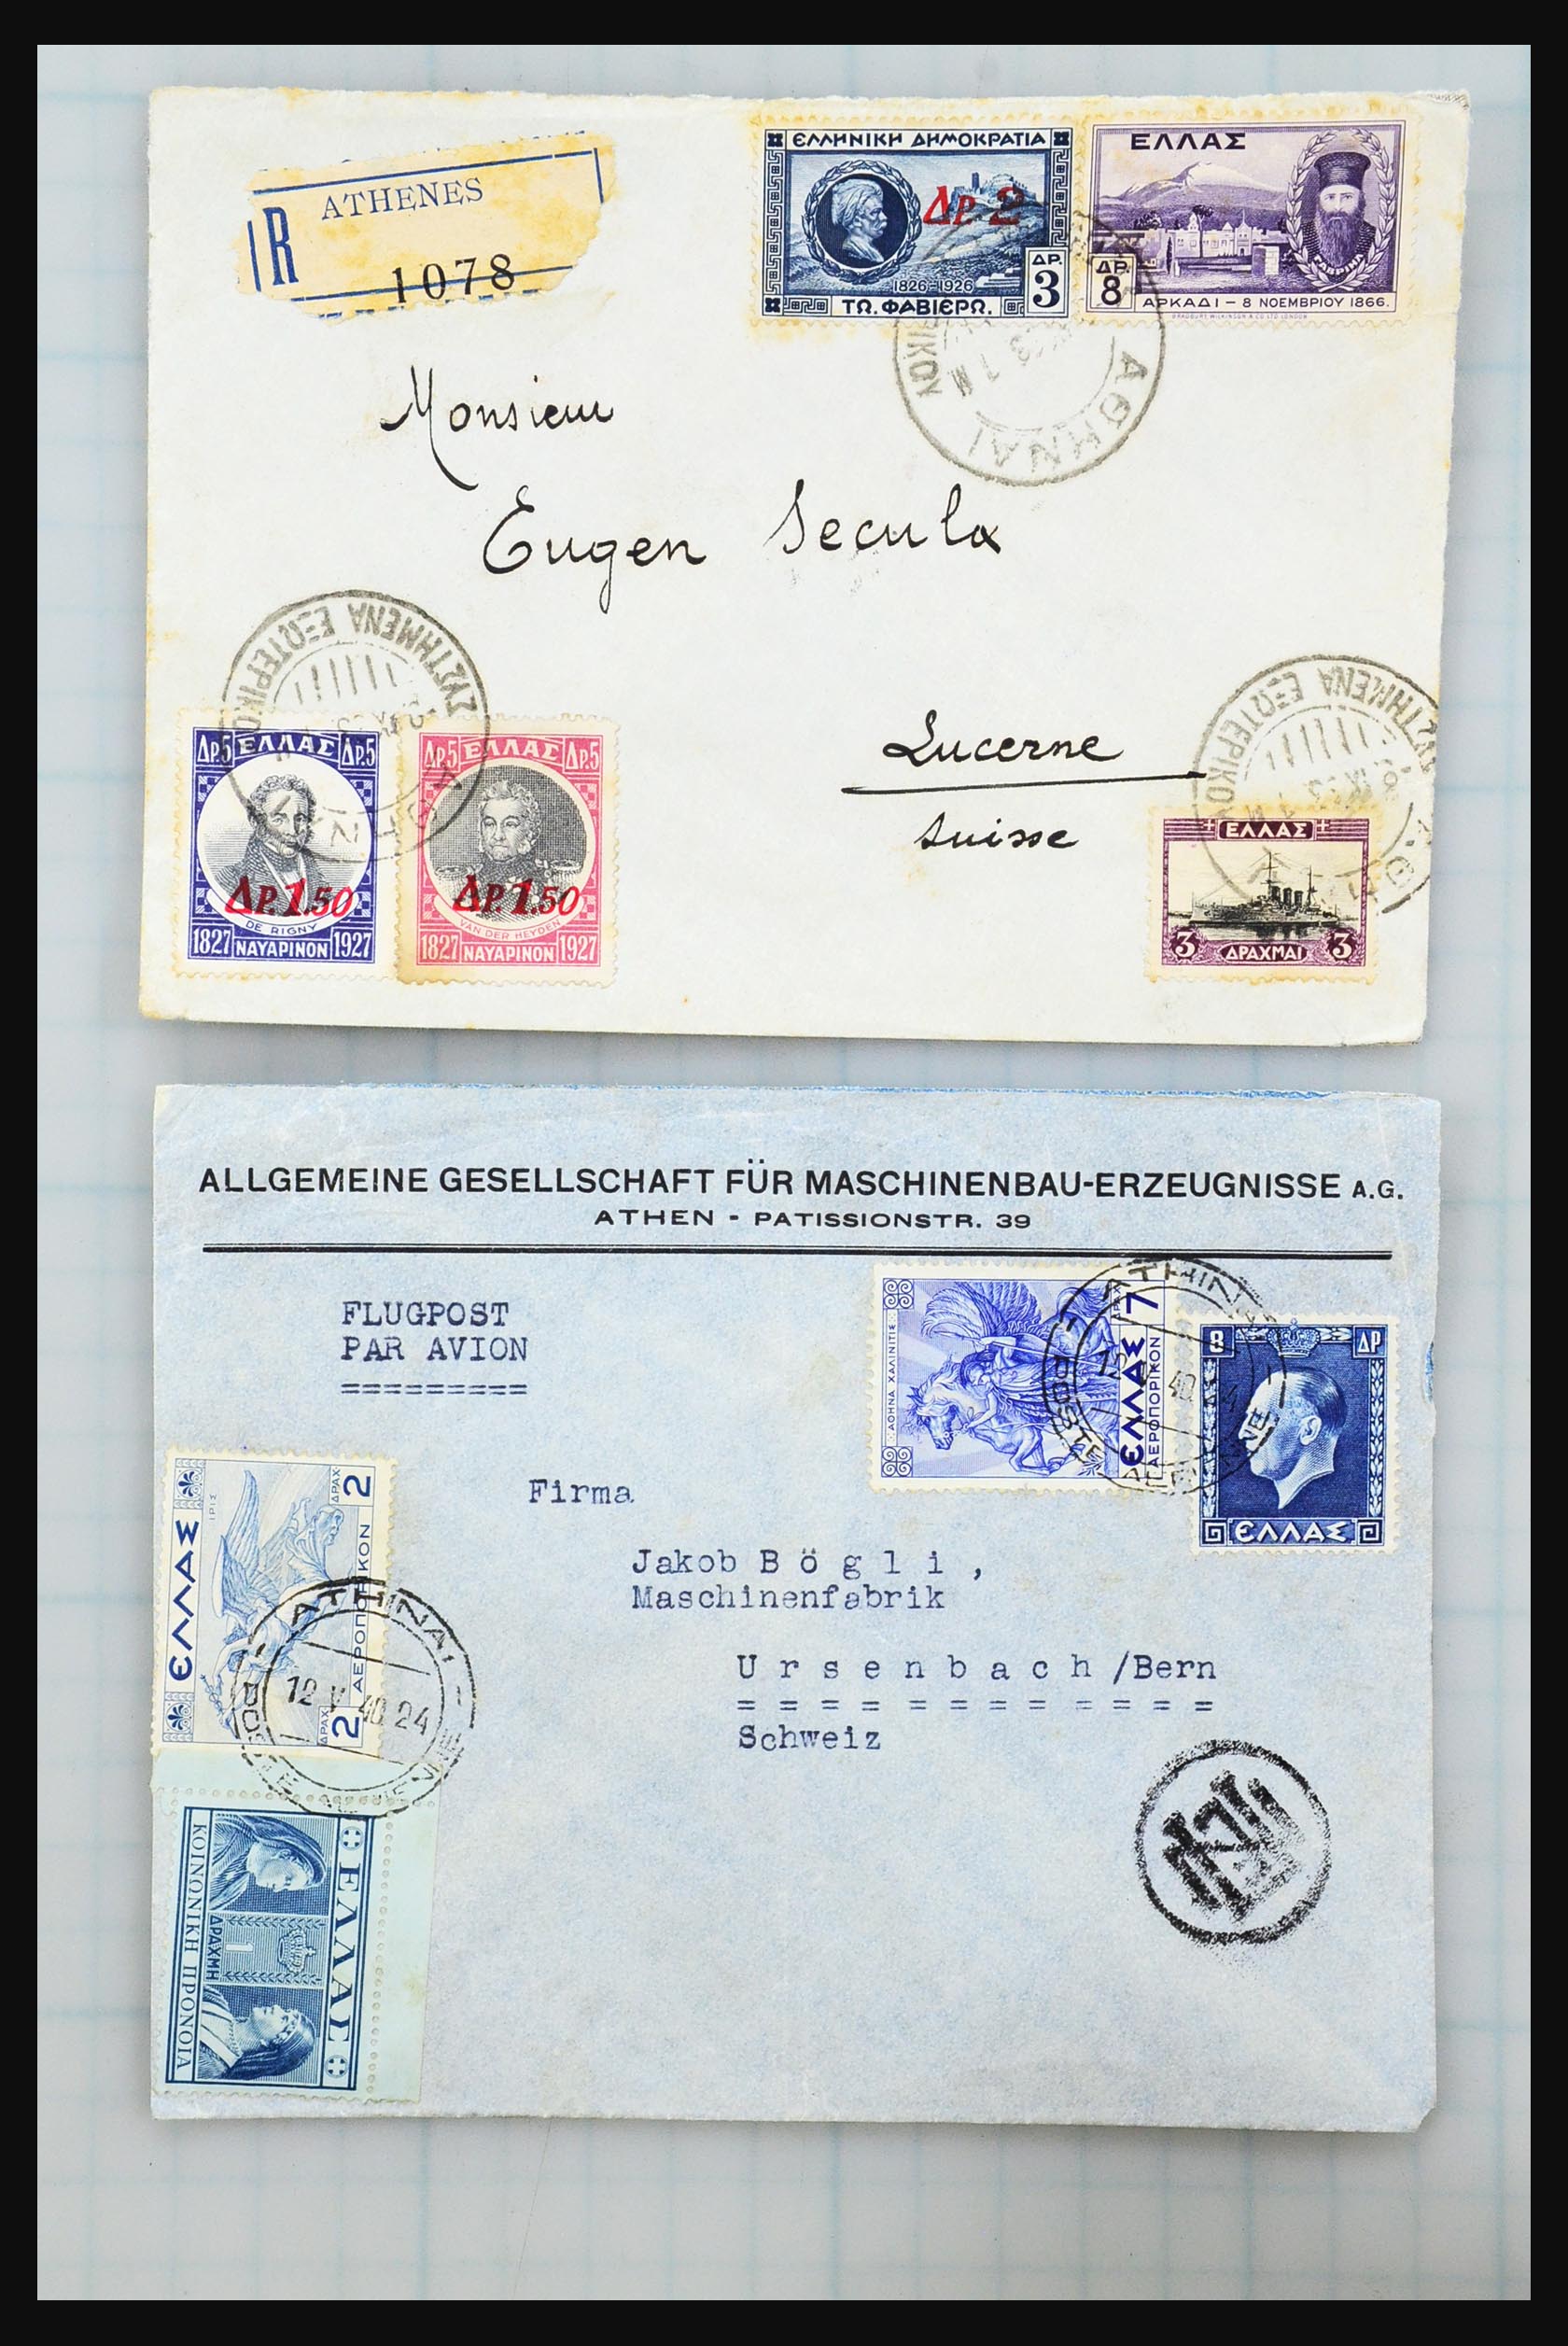 31358 018 - 31358 Portugal/Luxemburg/Griekenland brieven 1880-1960.